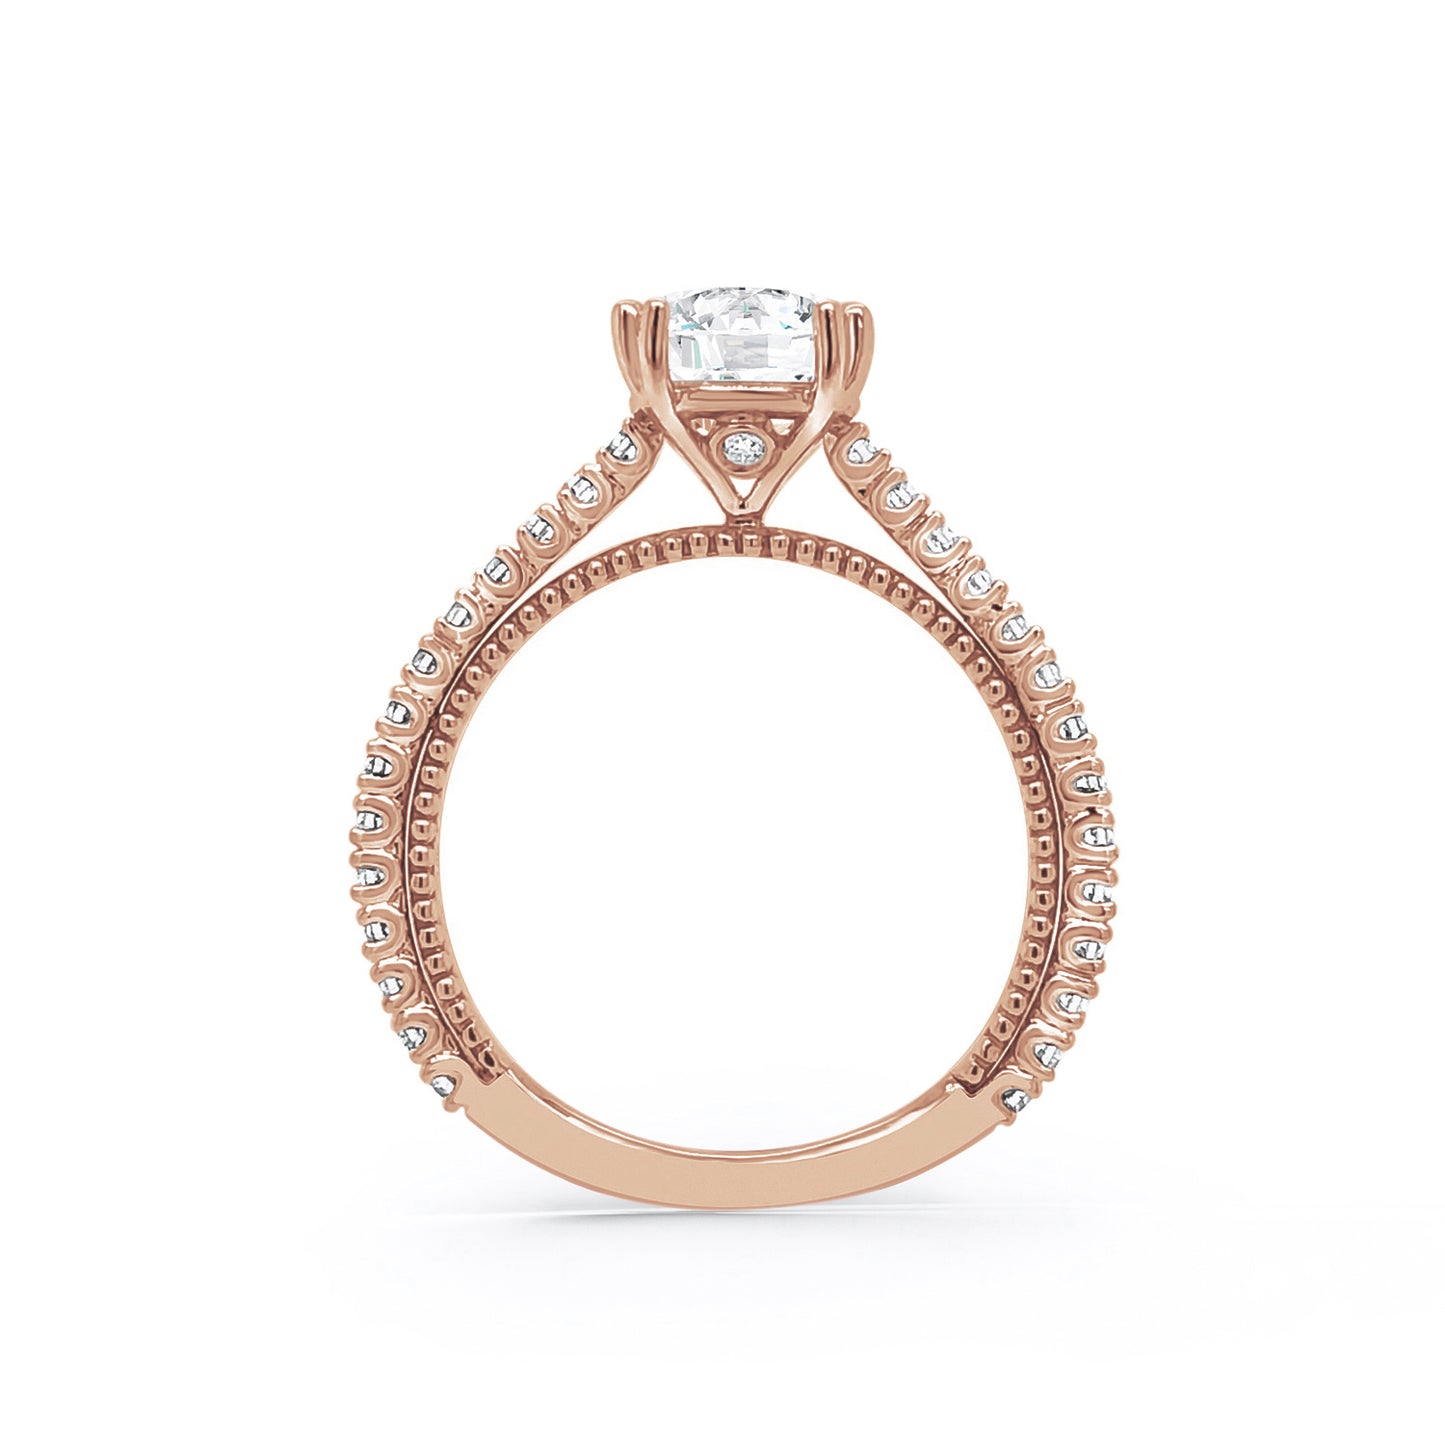 Beaded Timeless Diamond Engagement Ring